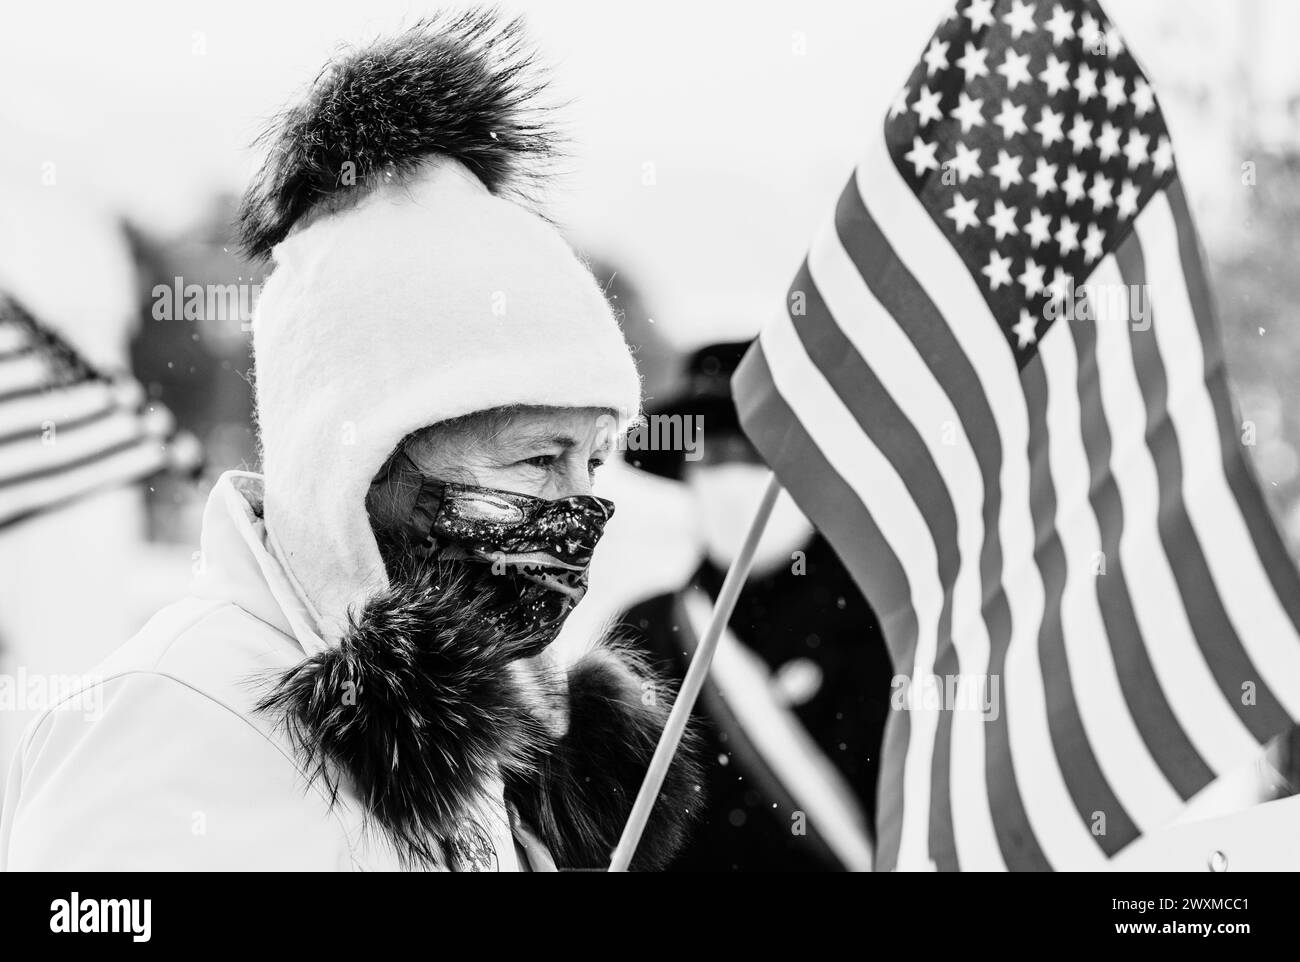 Attivista per i diritti di voto delle donne in una giornata invernale a Missoula, Montana Foto Stock